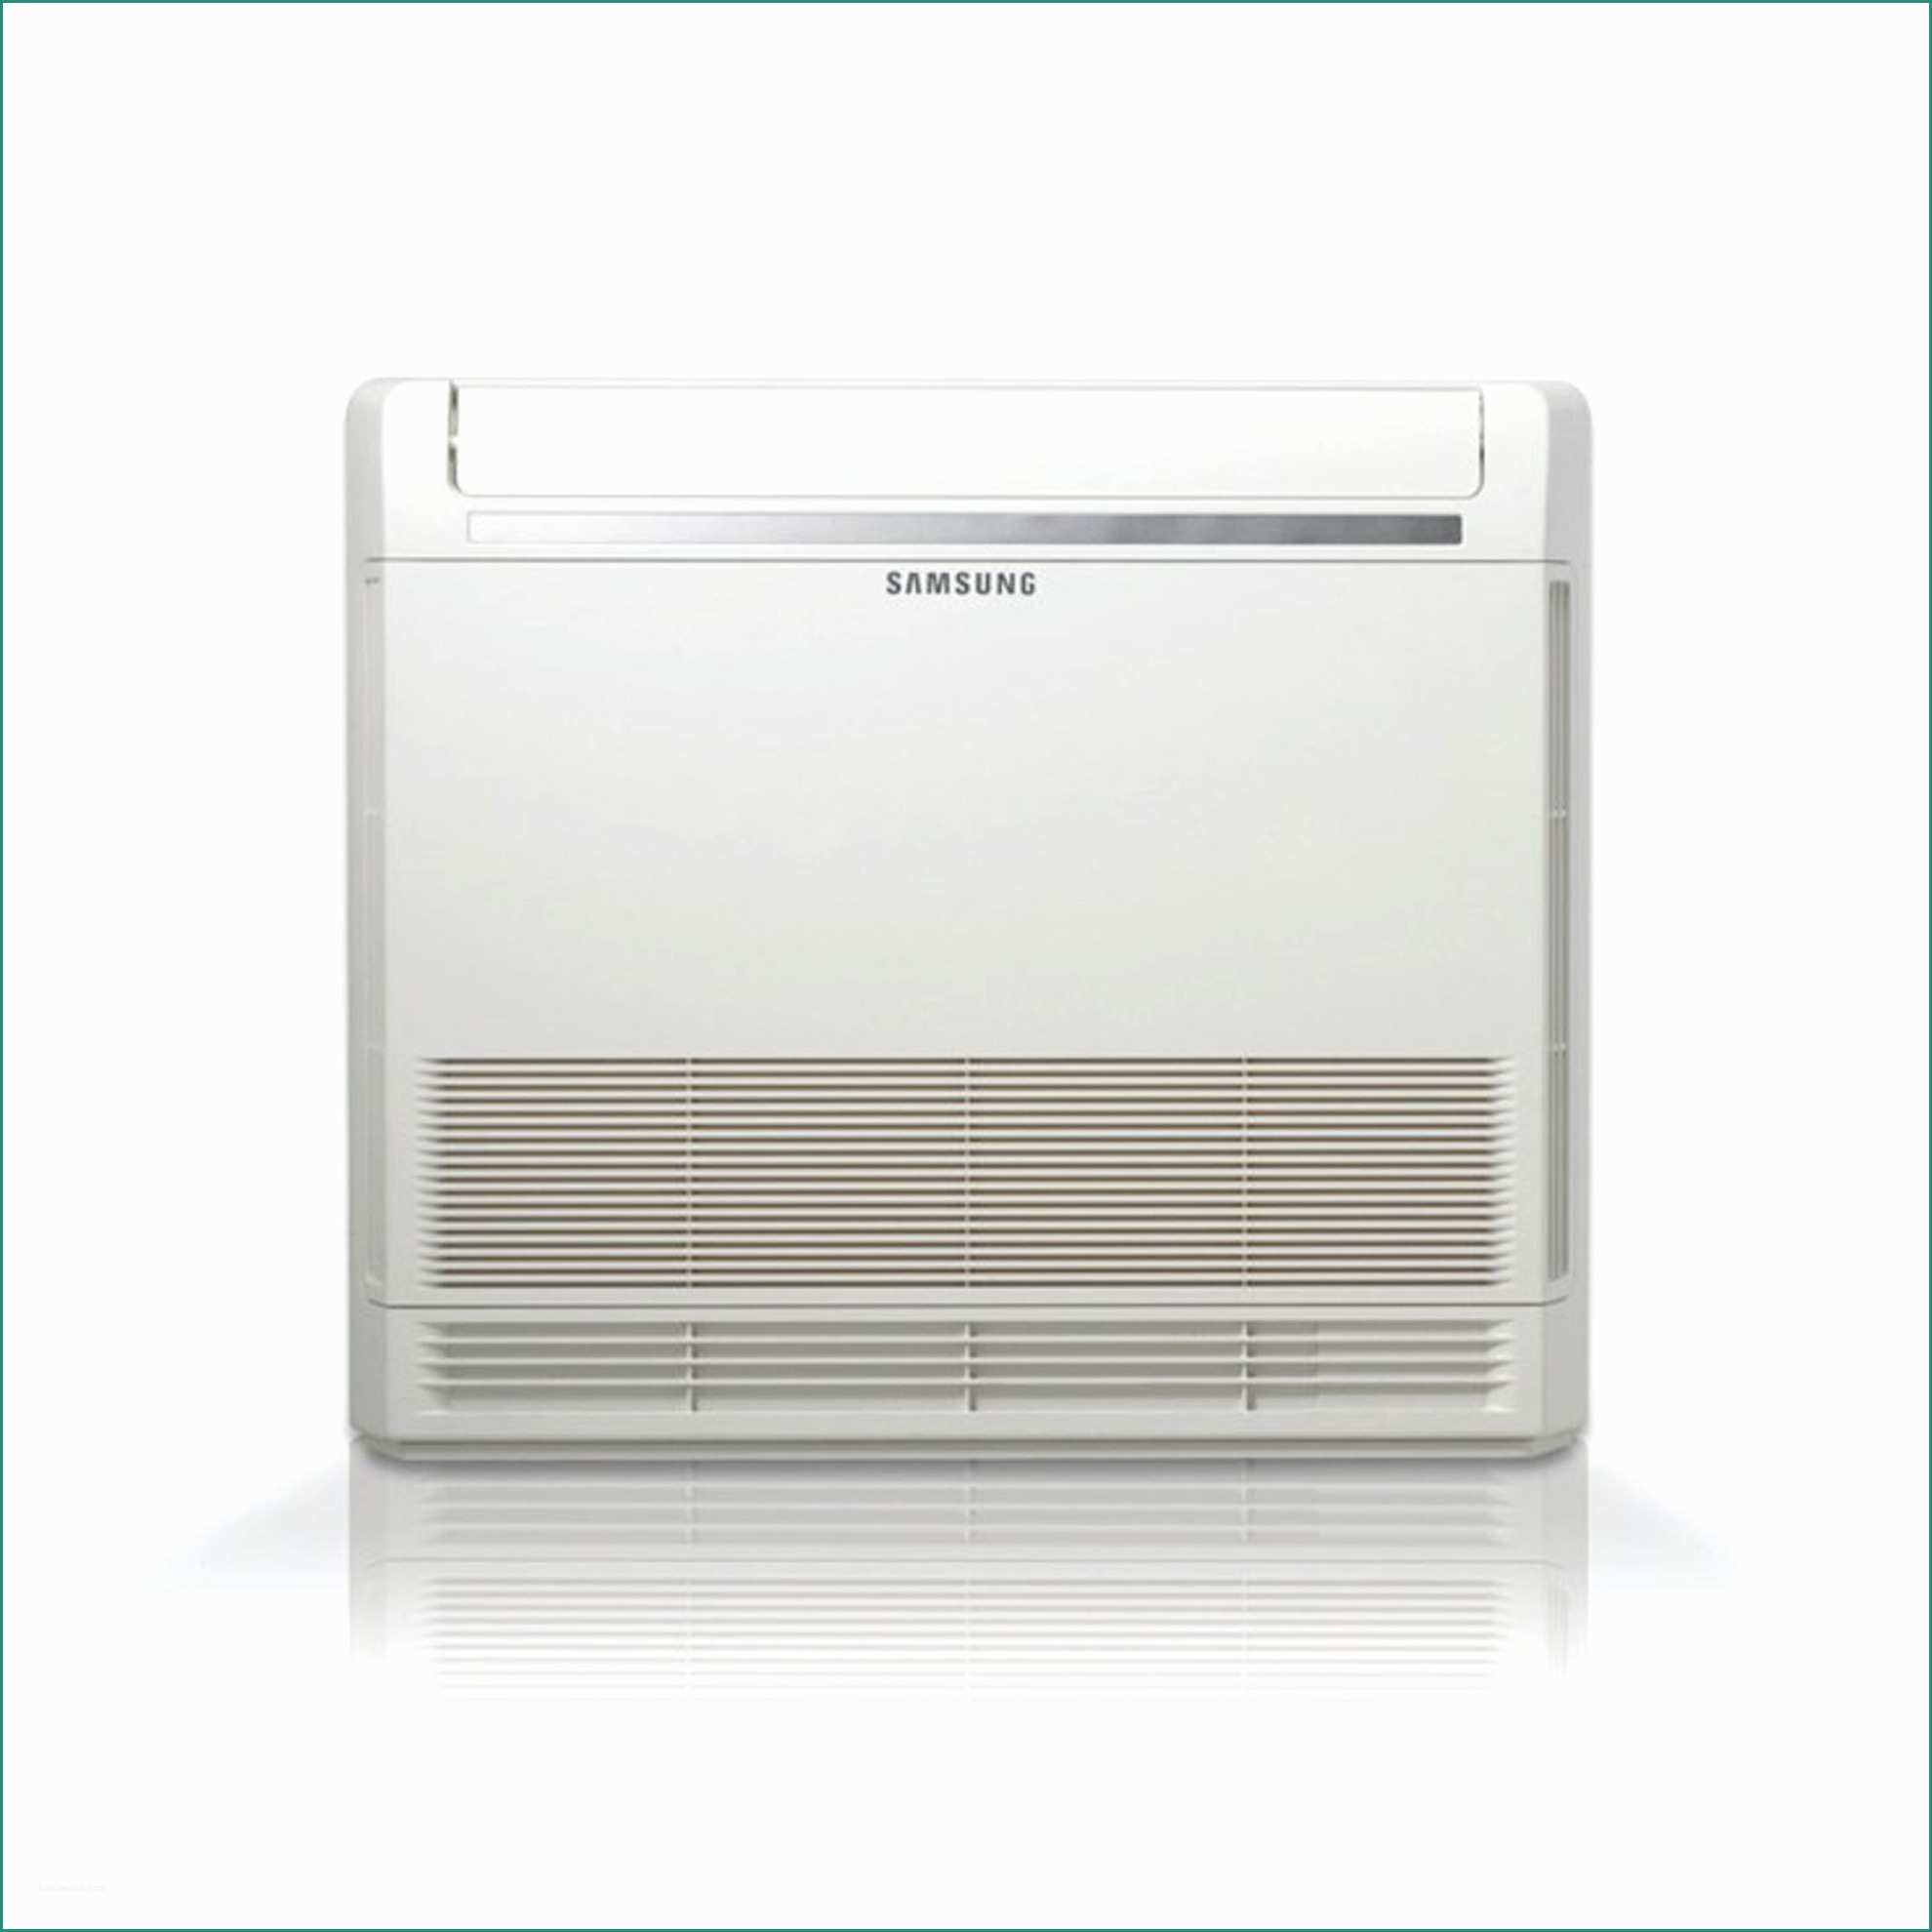 Daitsu Condizionatori Opinioni E Climatizzatore Samsung Dual Split Pavimento Console Aj050 9 12